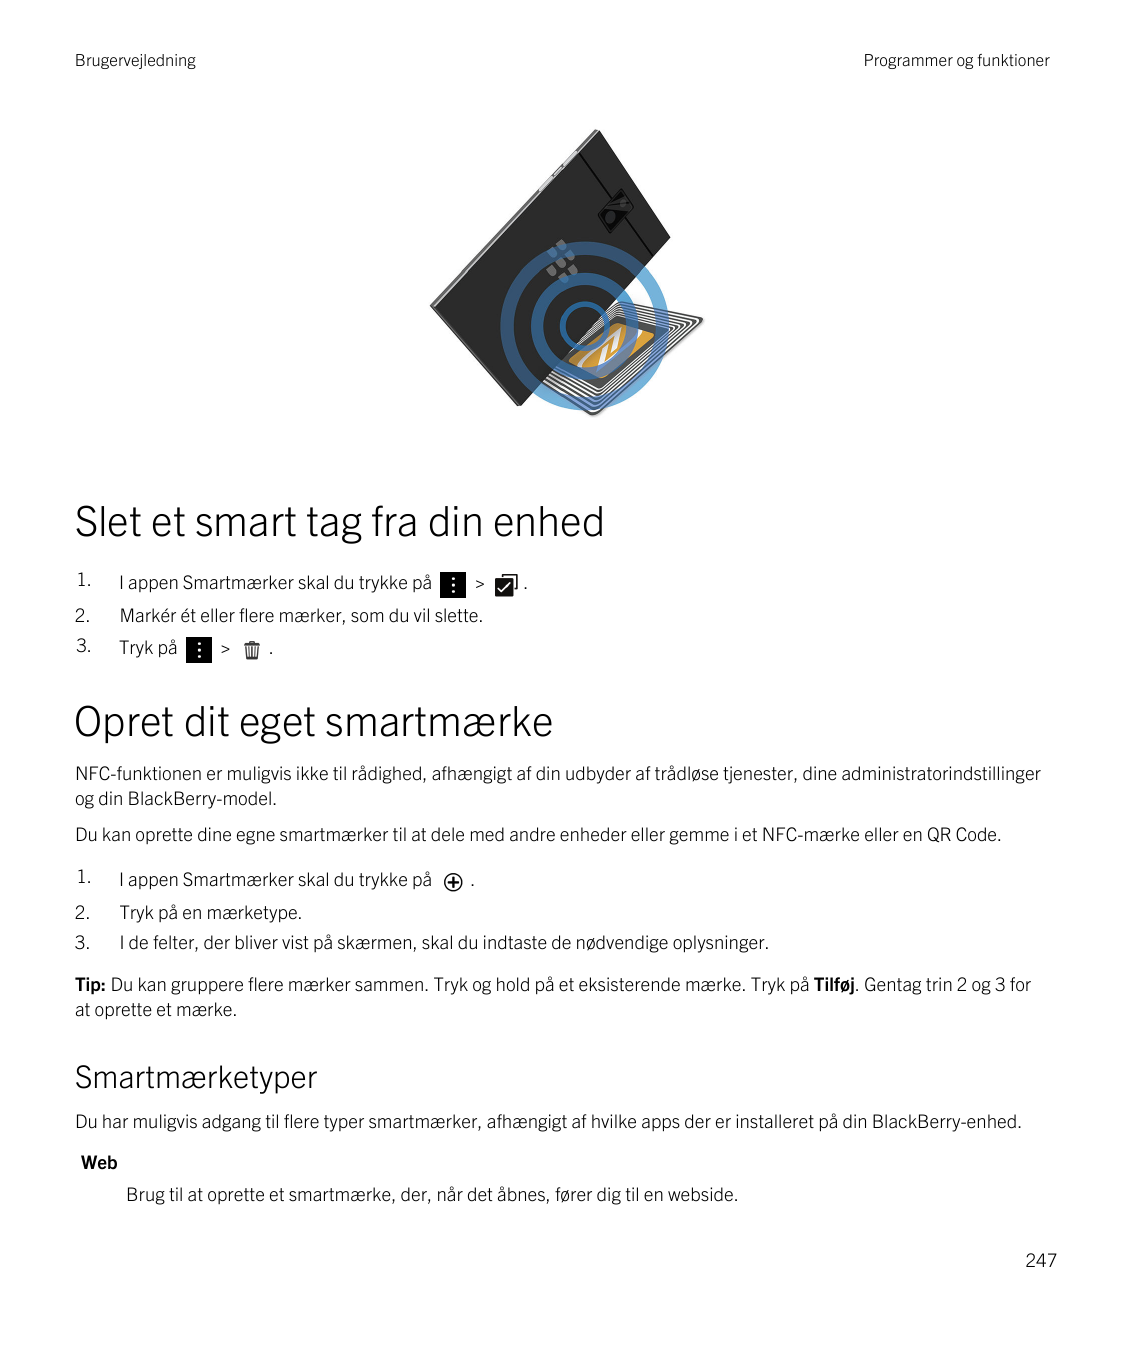 BrugervejledningProgrammer og funktionerSlet et smart tag fra din enhed1.I appen Smartmærker skal du trykke på2.Markér ét eller 